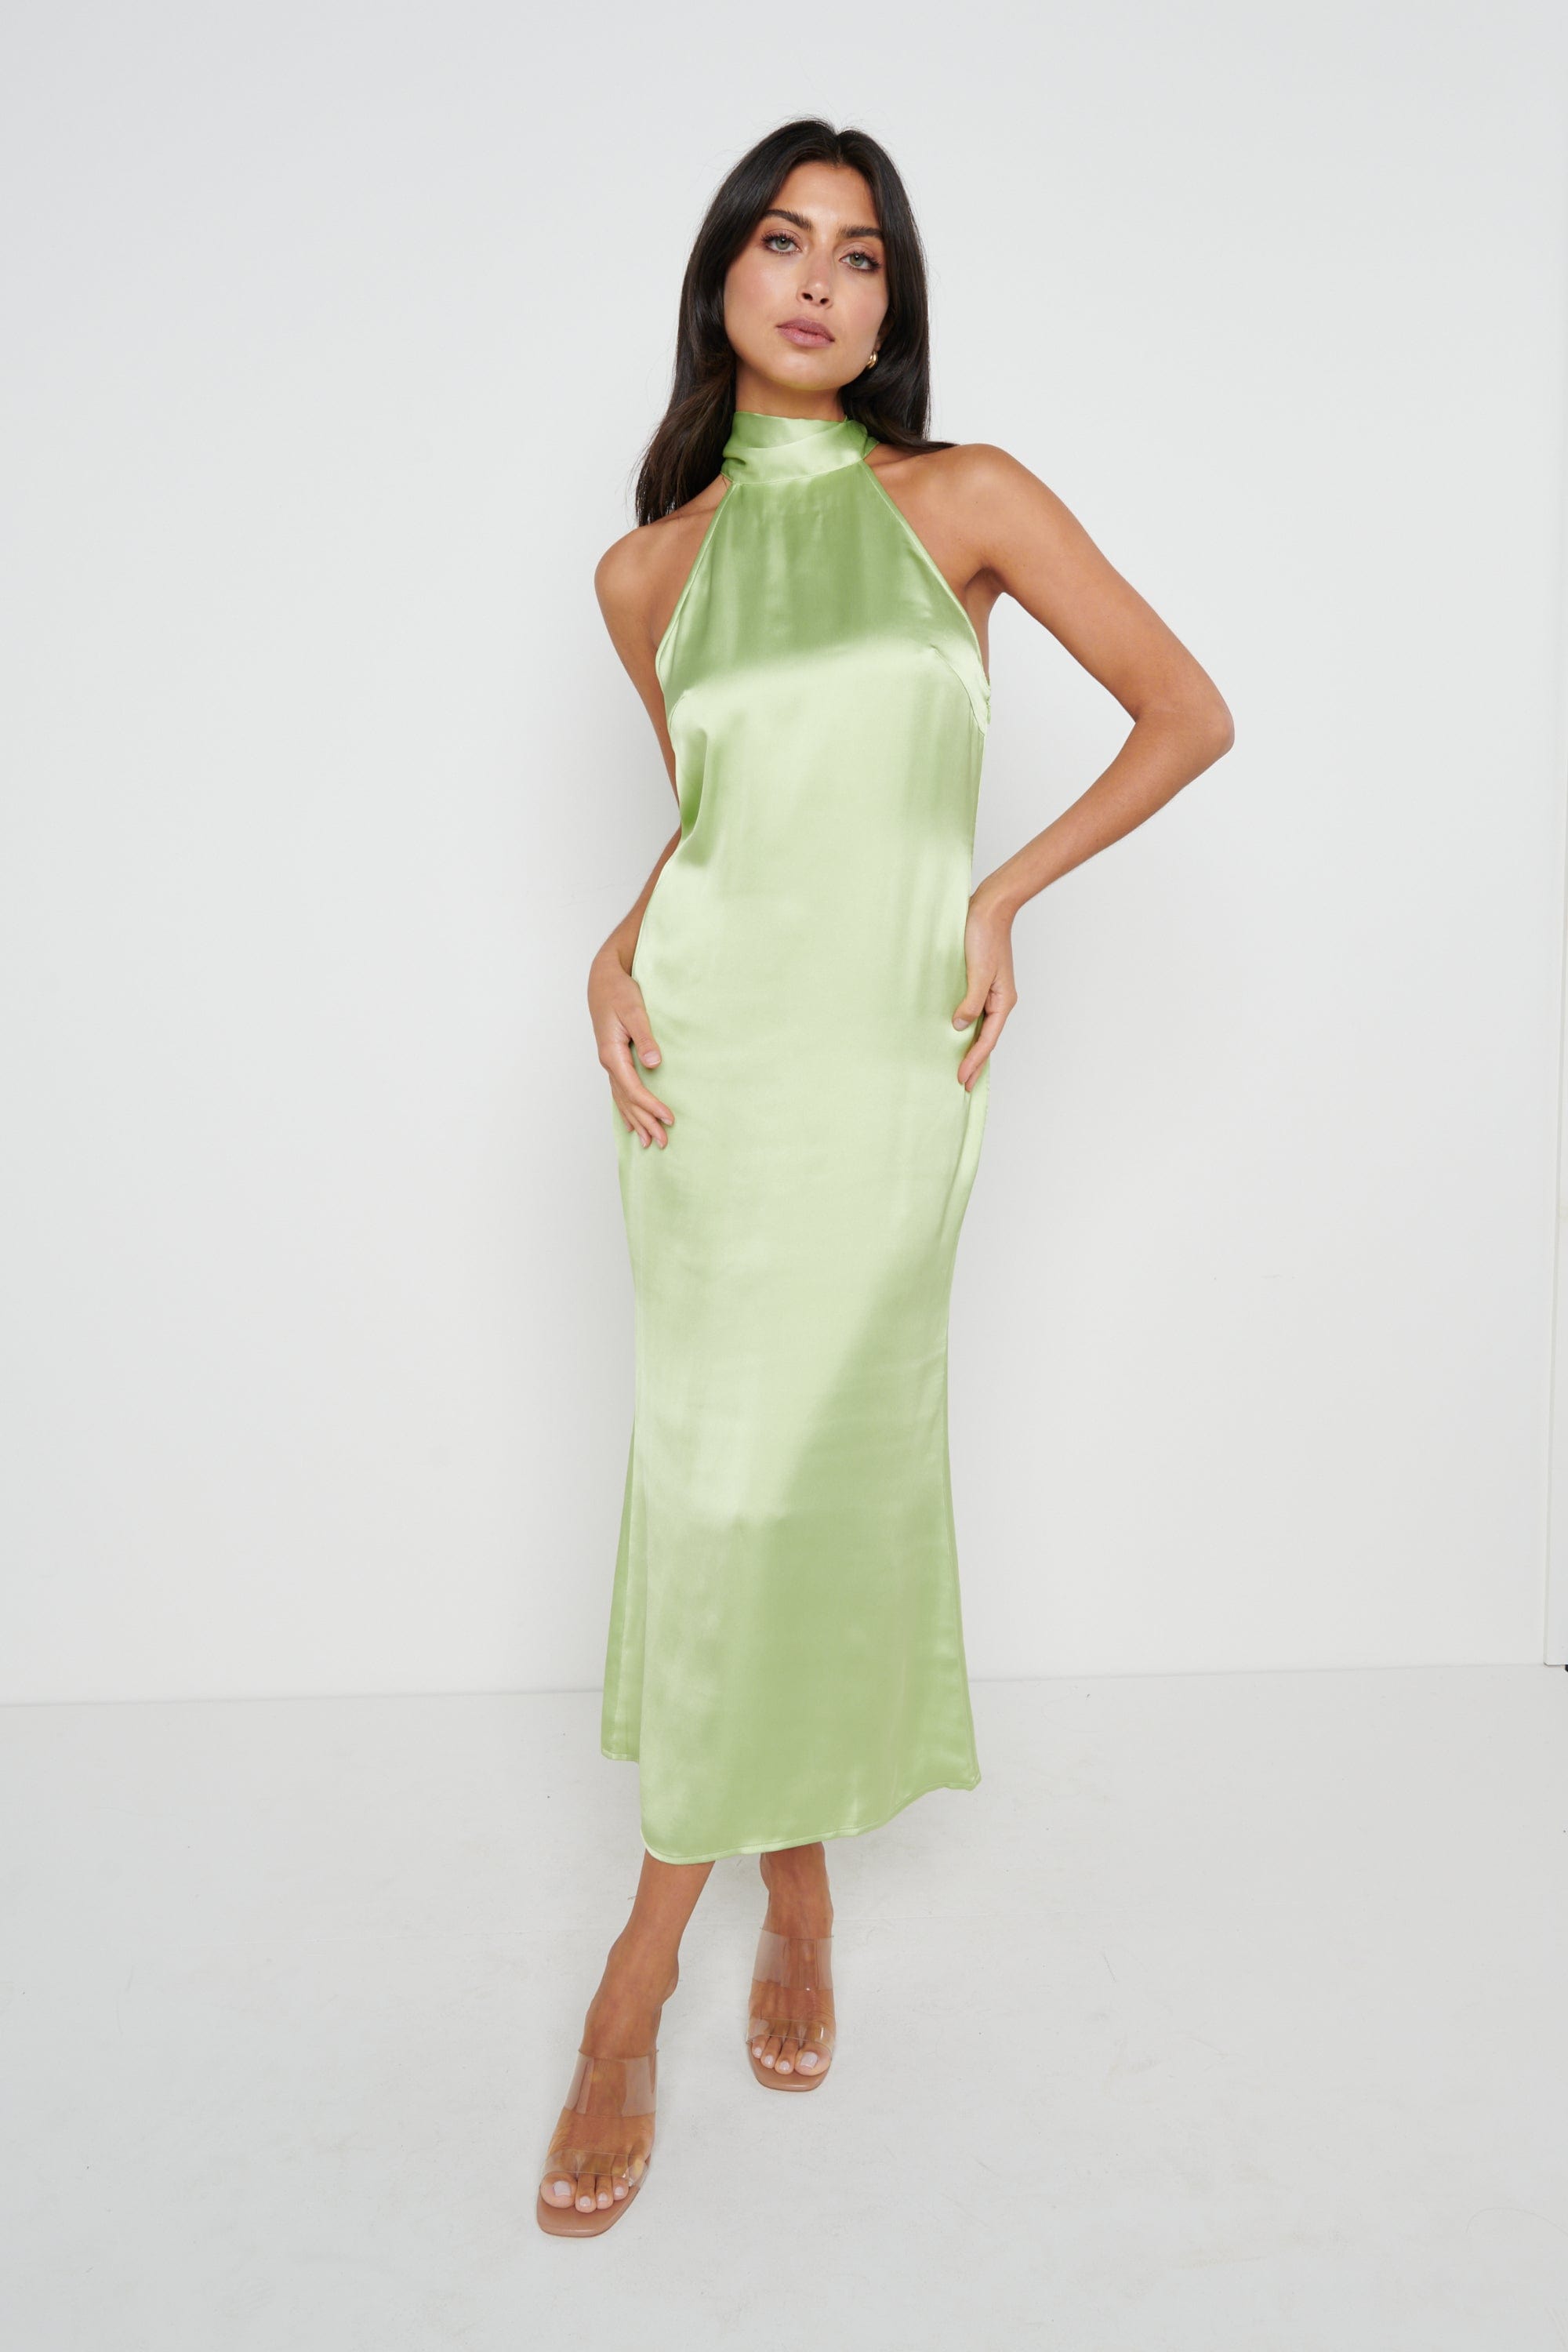 Raleigh Halter Neck Tie Dress - Green – Pretty Lavish